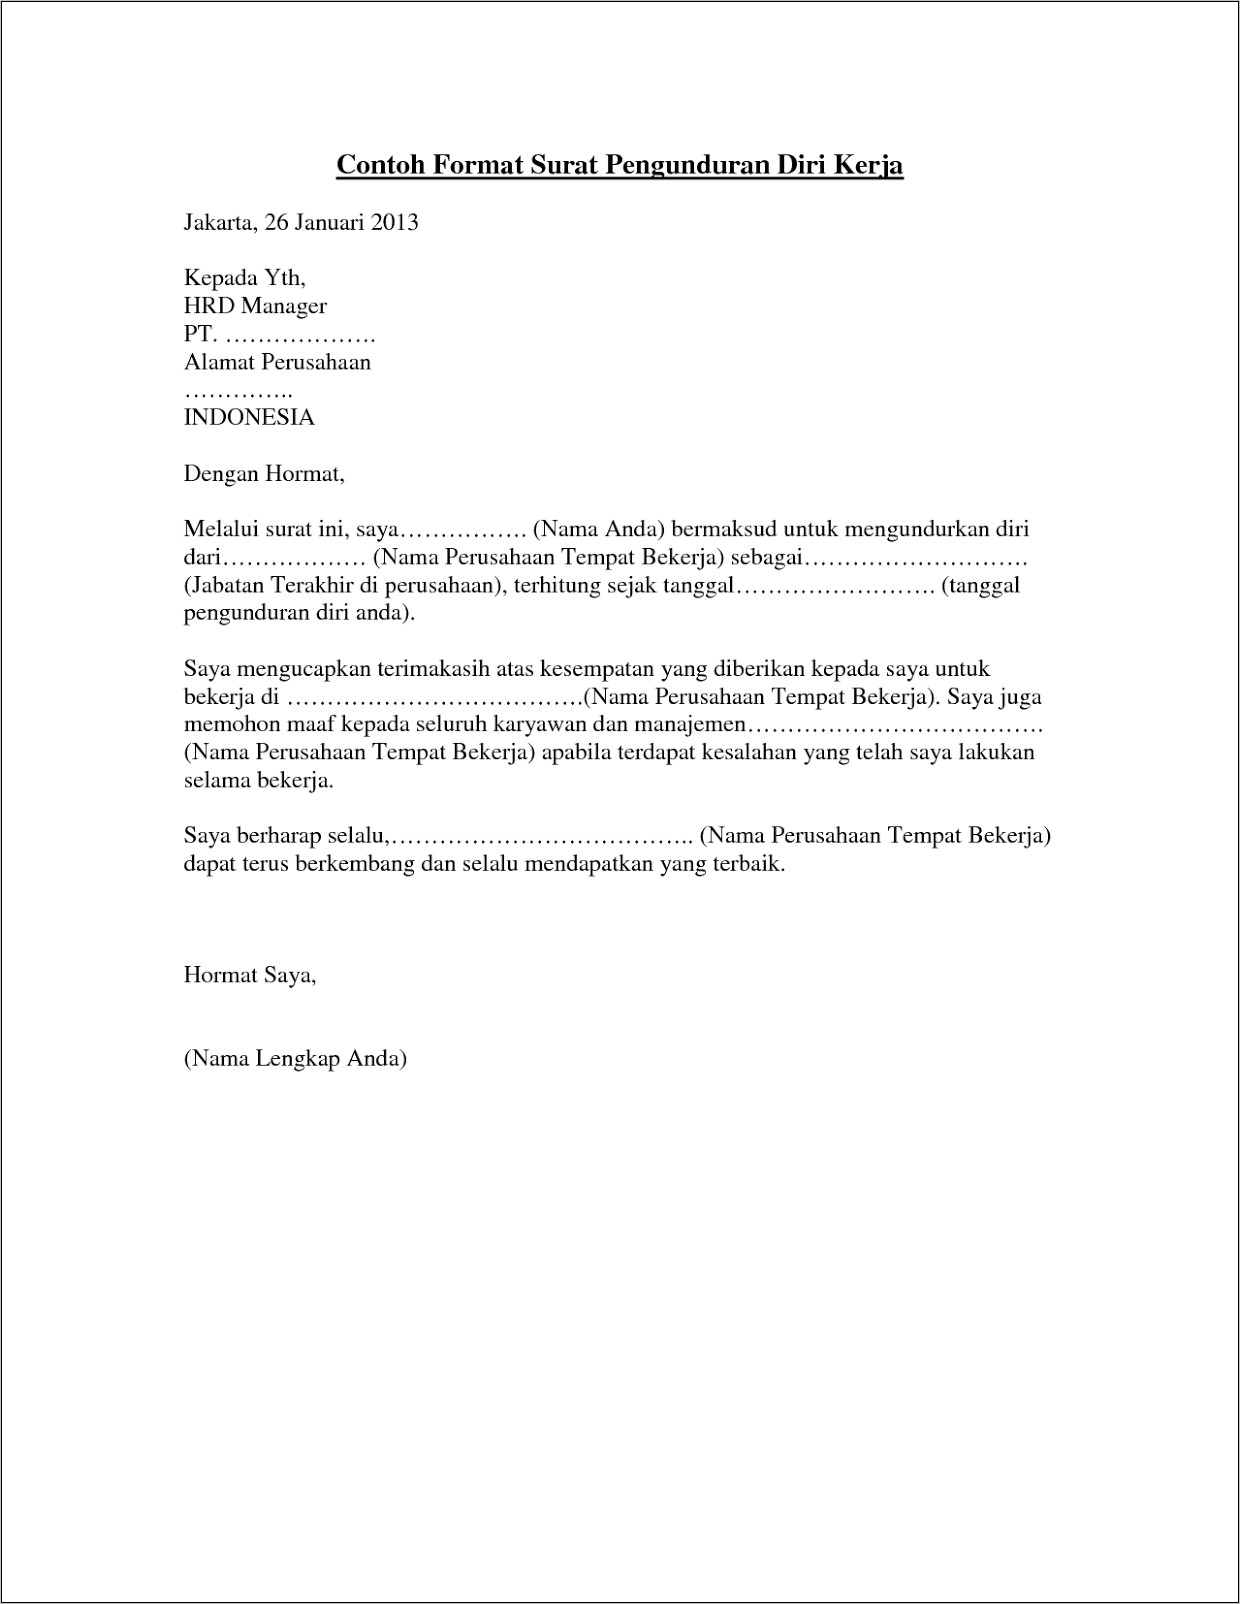 Contoh Surat Resign Kerja Dalam Exel